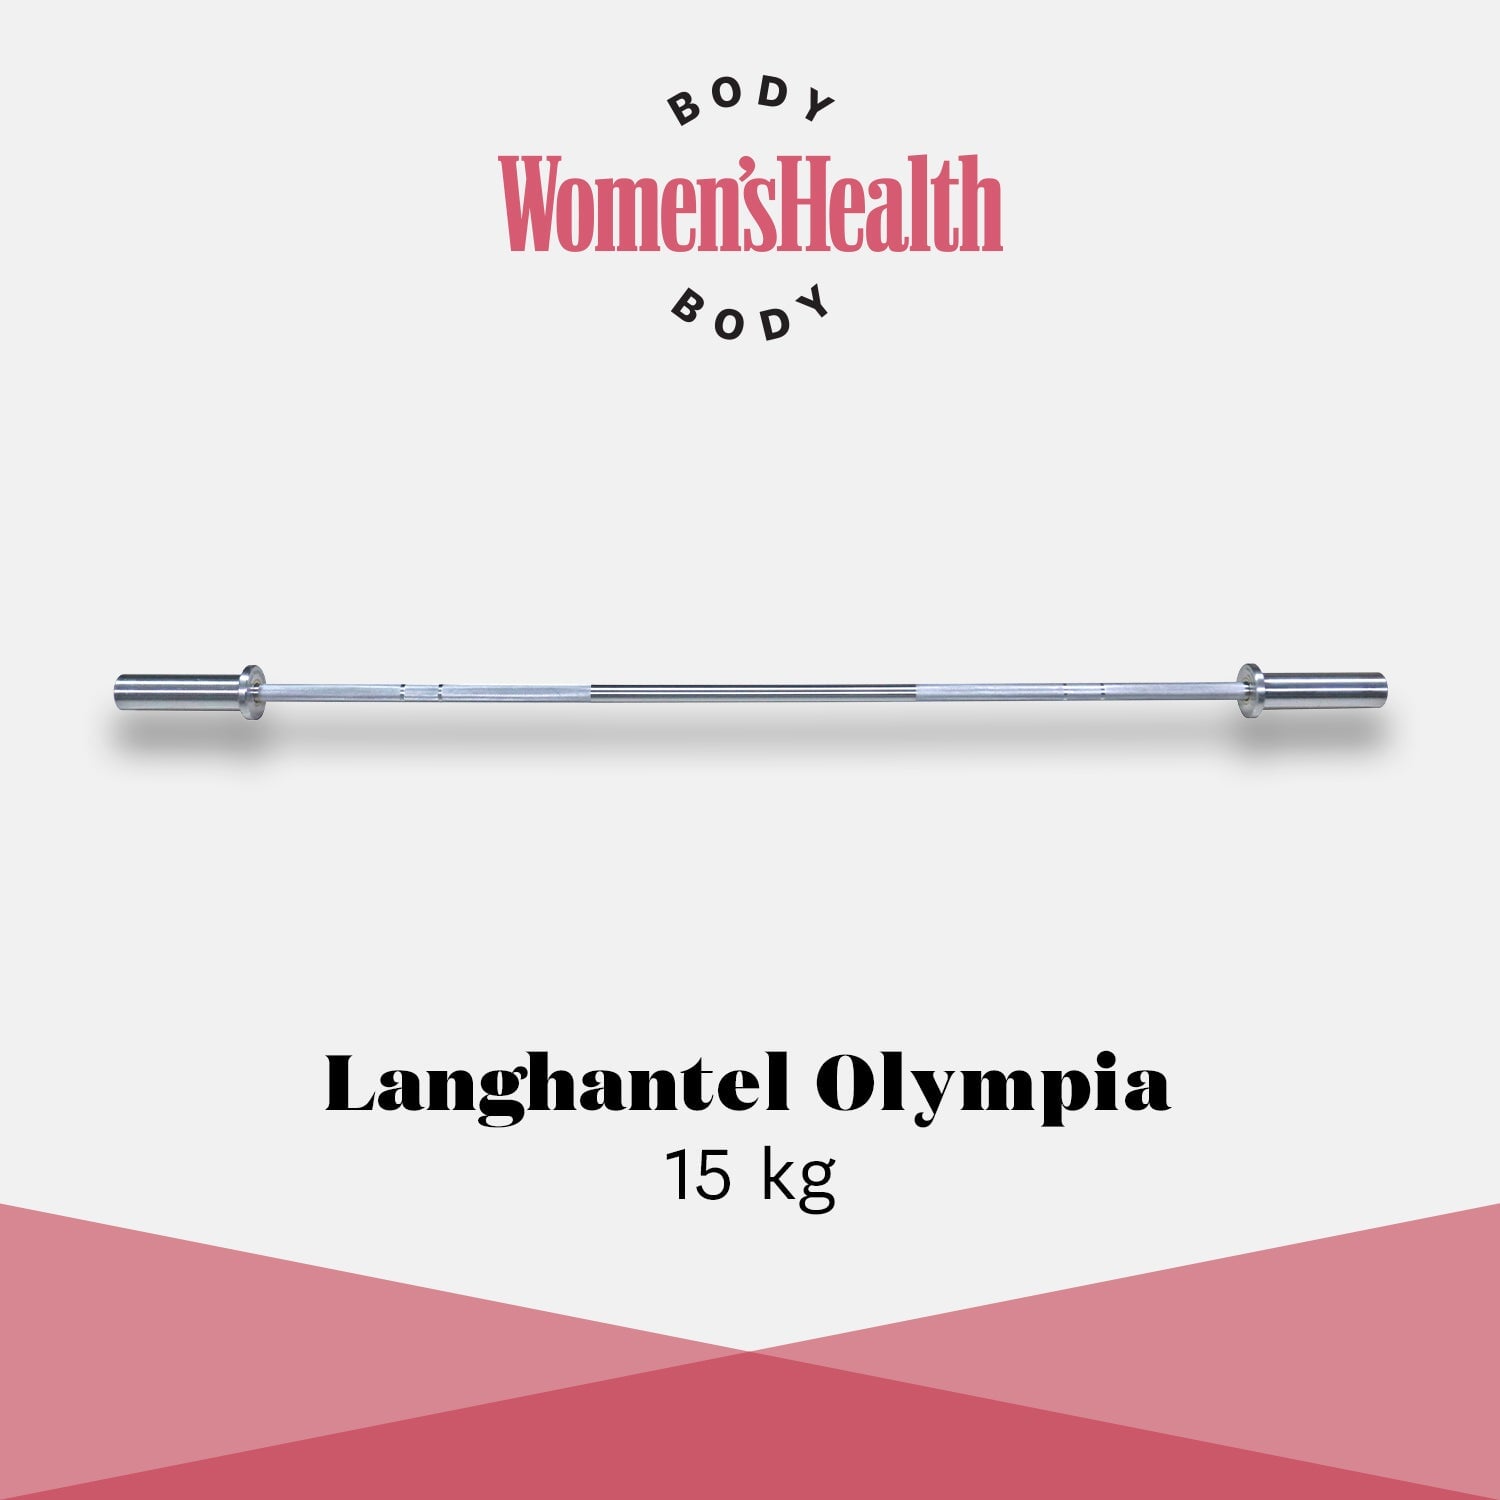 Langhantel Olympia (15kg) Women's Health Body